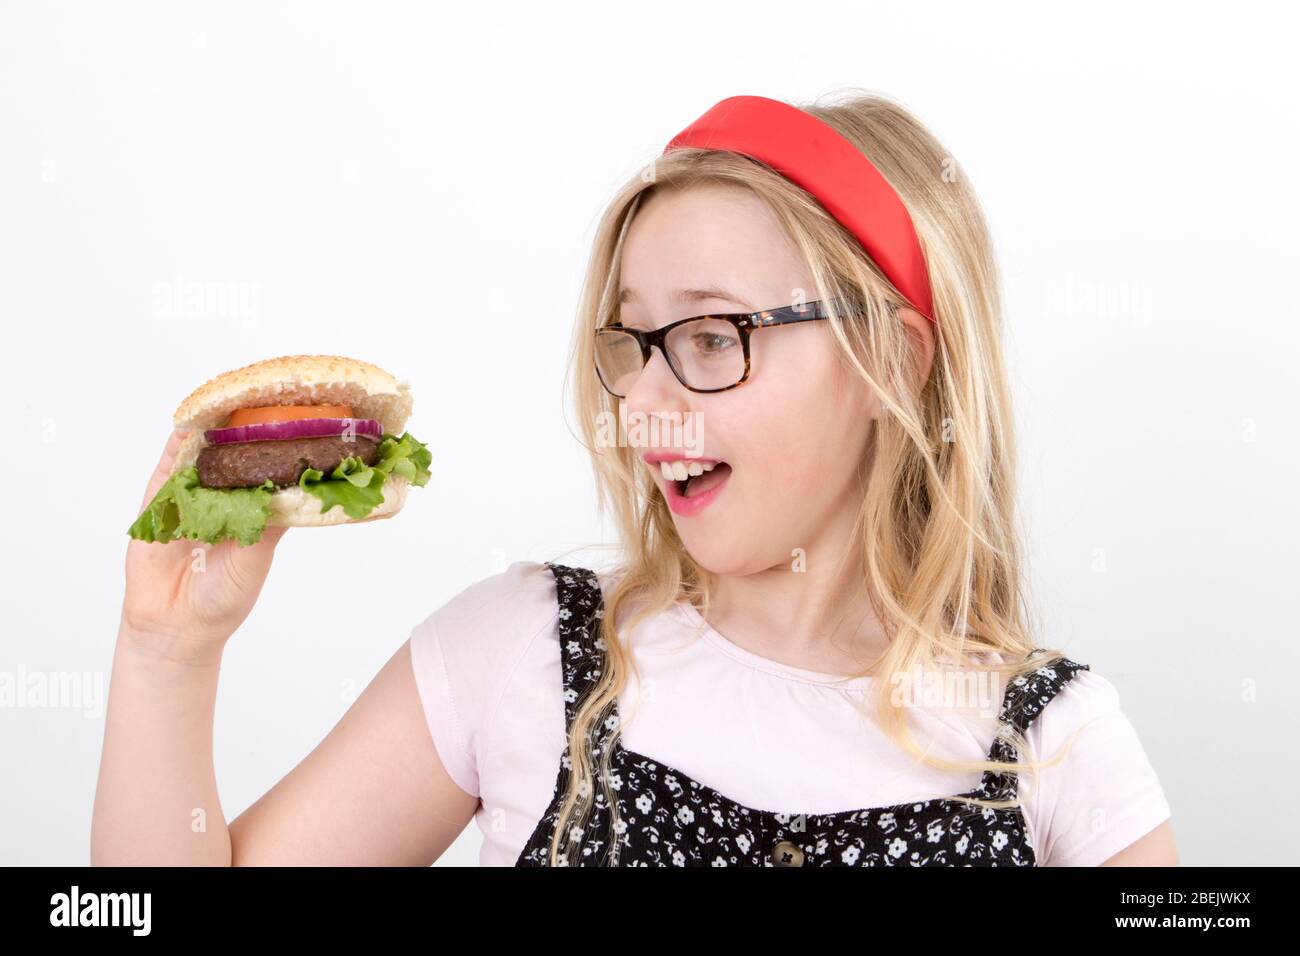 Une jeune fille blonde porte des lunettes dans un groupe rouge Alice qui tient un hamburger maison Banque D'Images